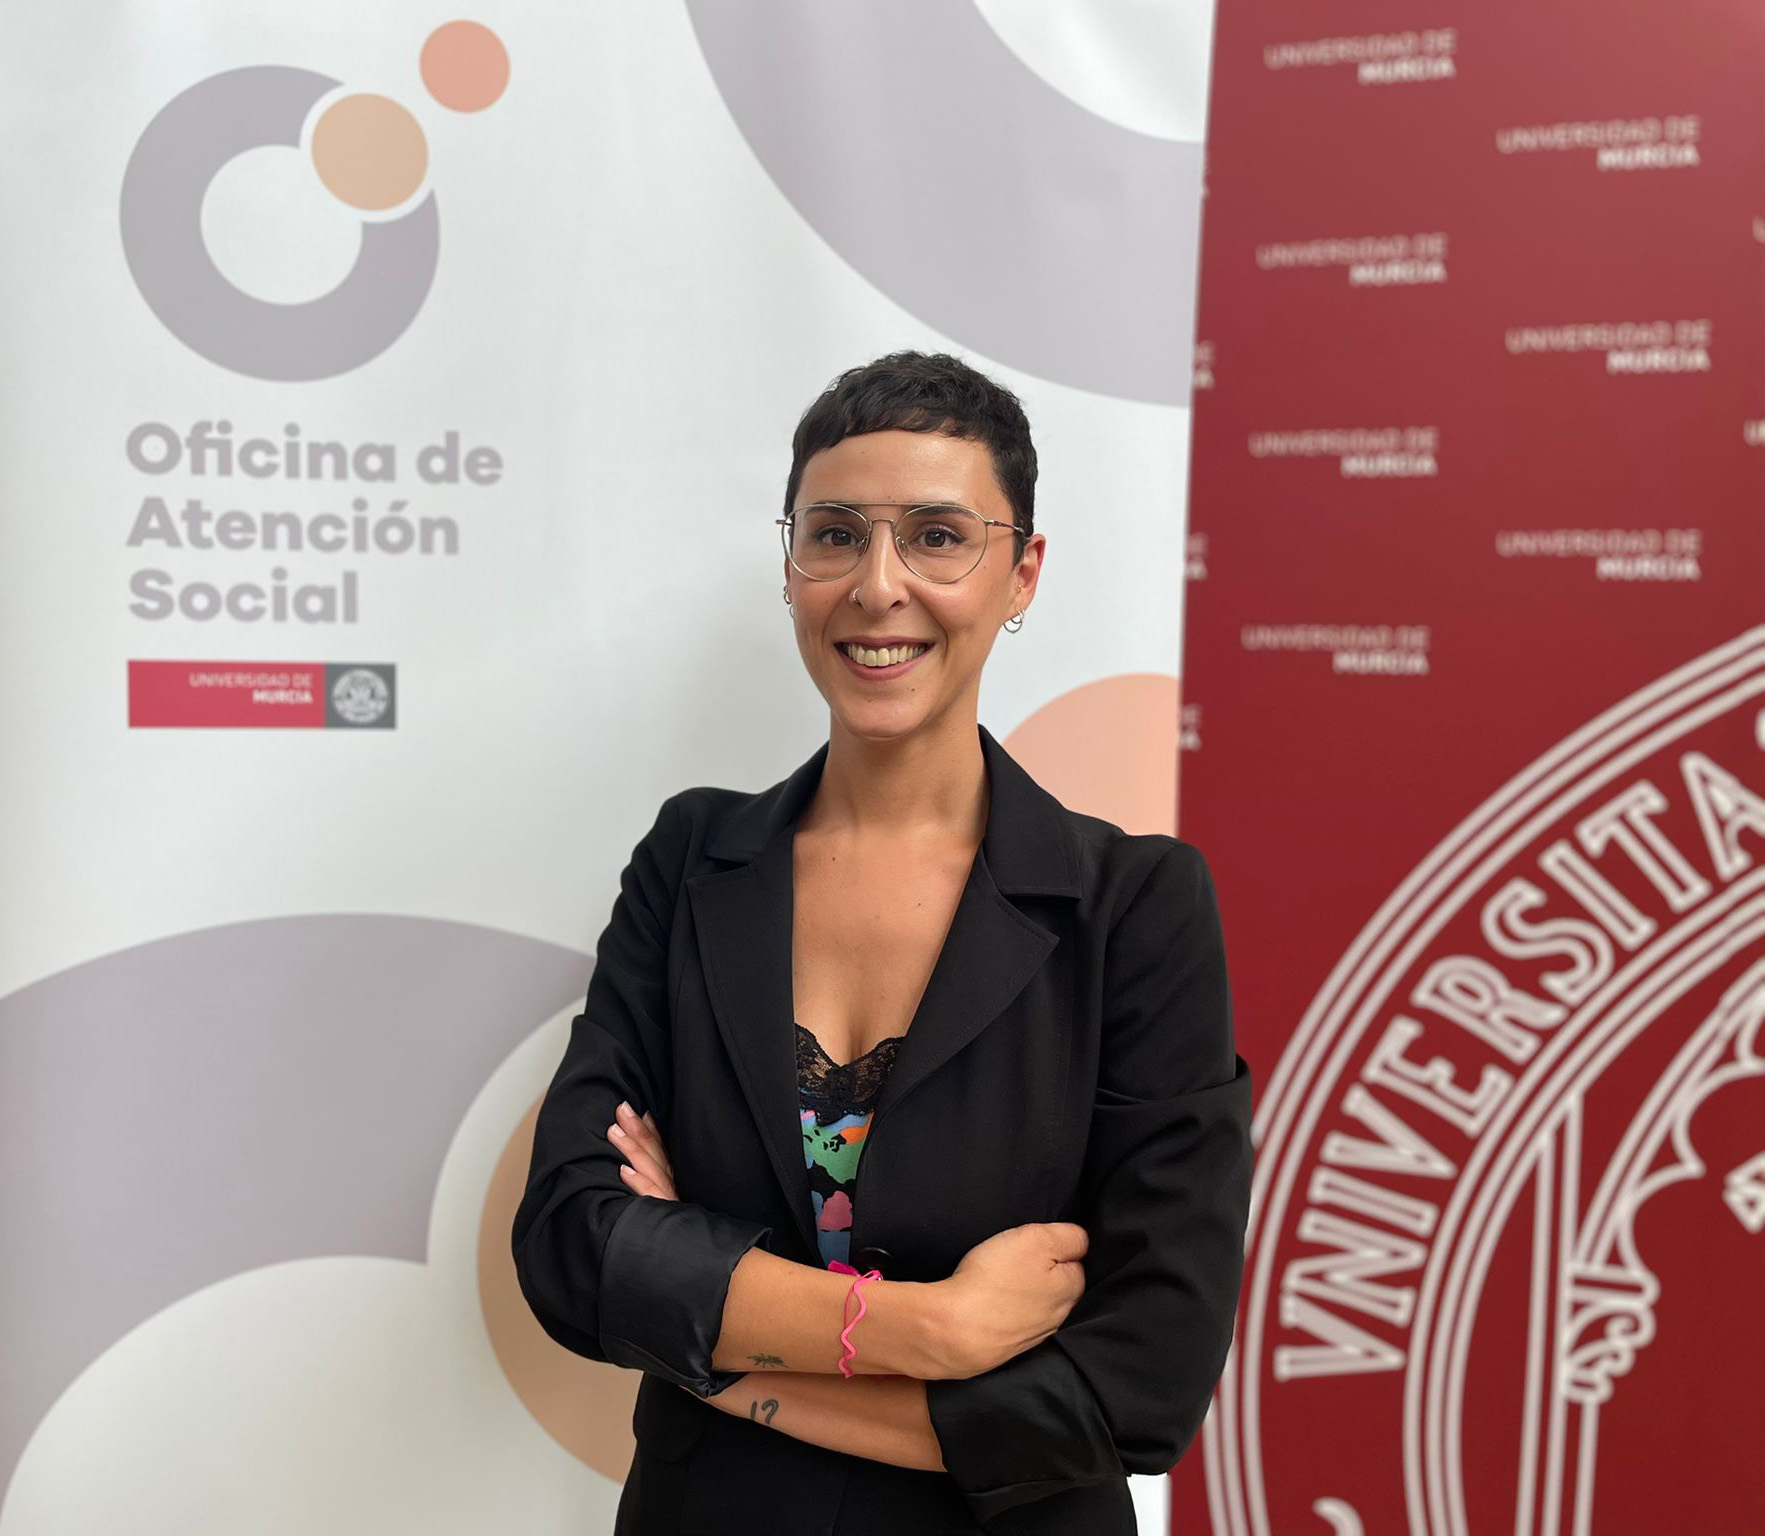 Sonia Miñano Sánchez, trabajadora social de la Oficina de Atención Social de la UMU